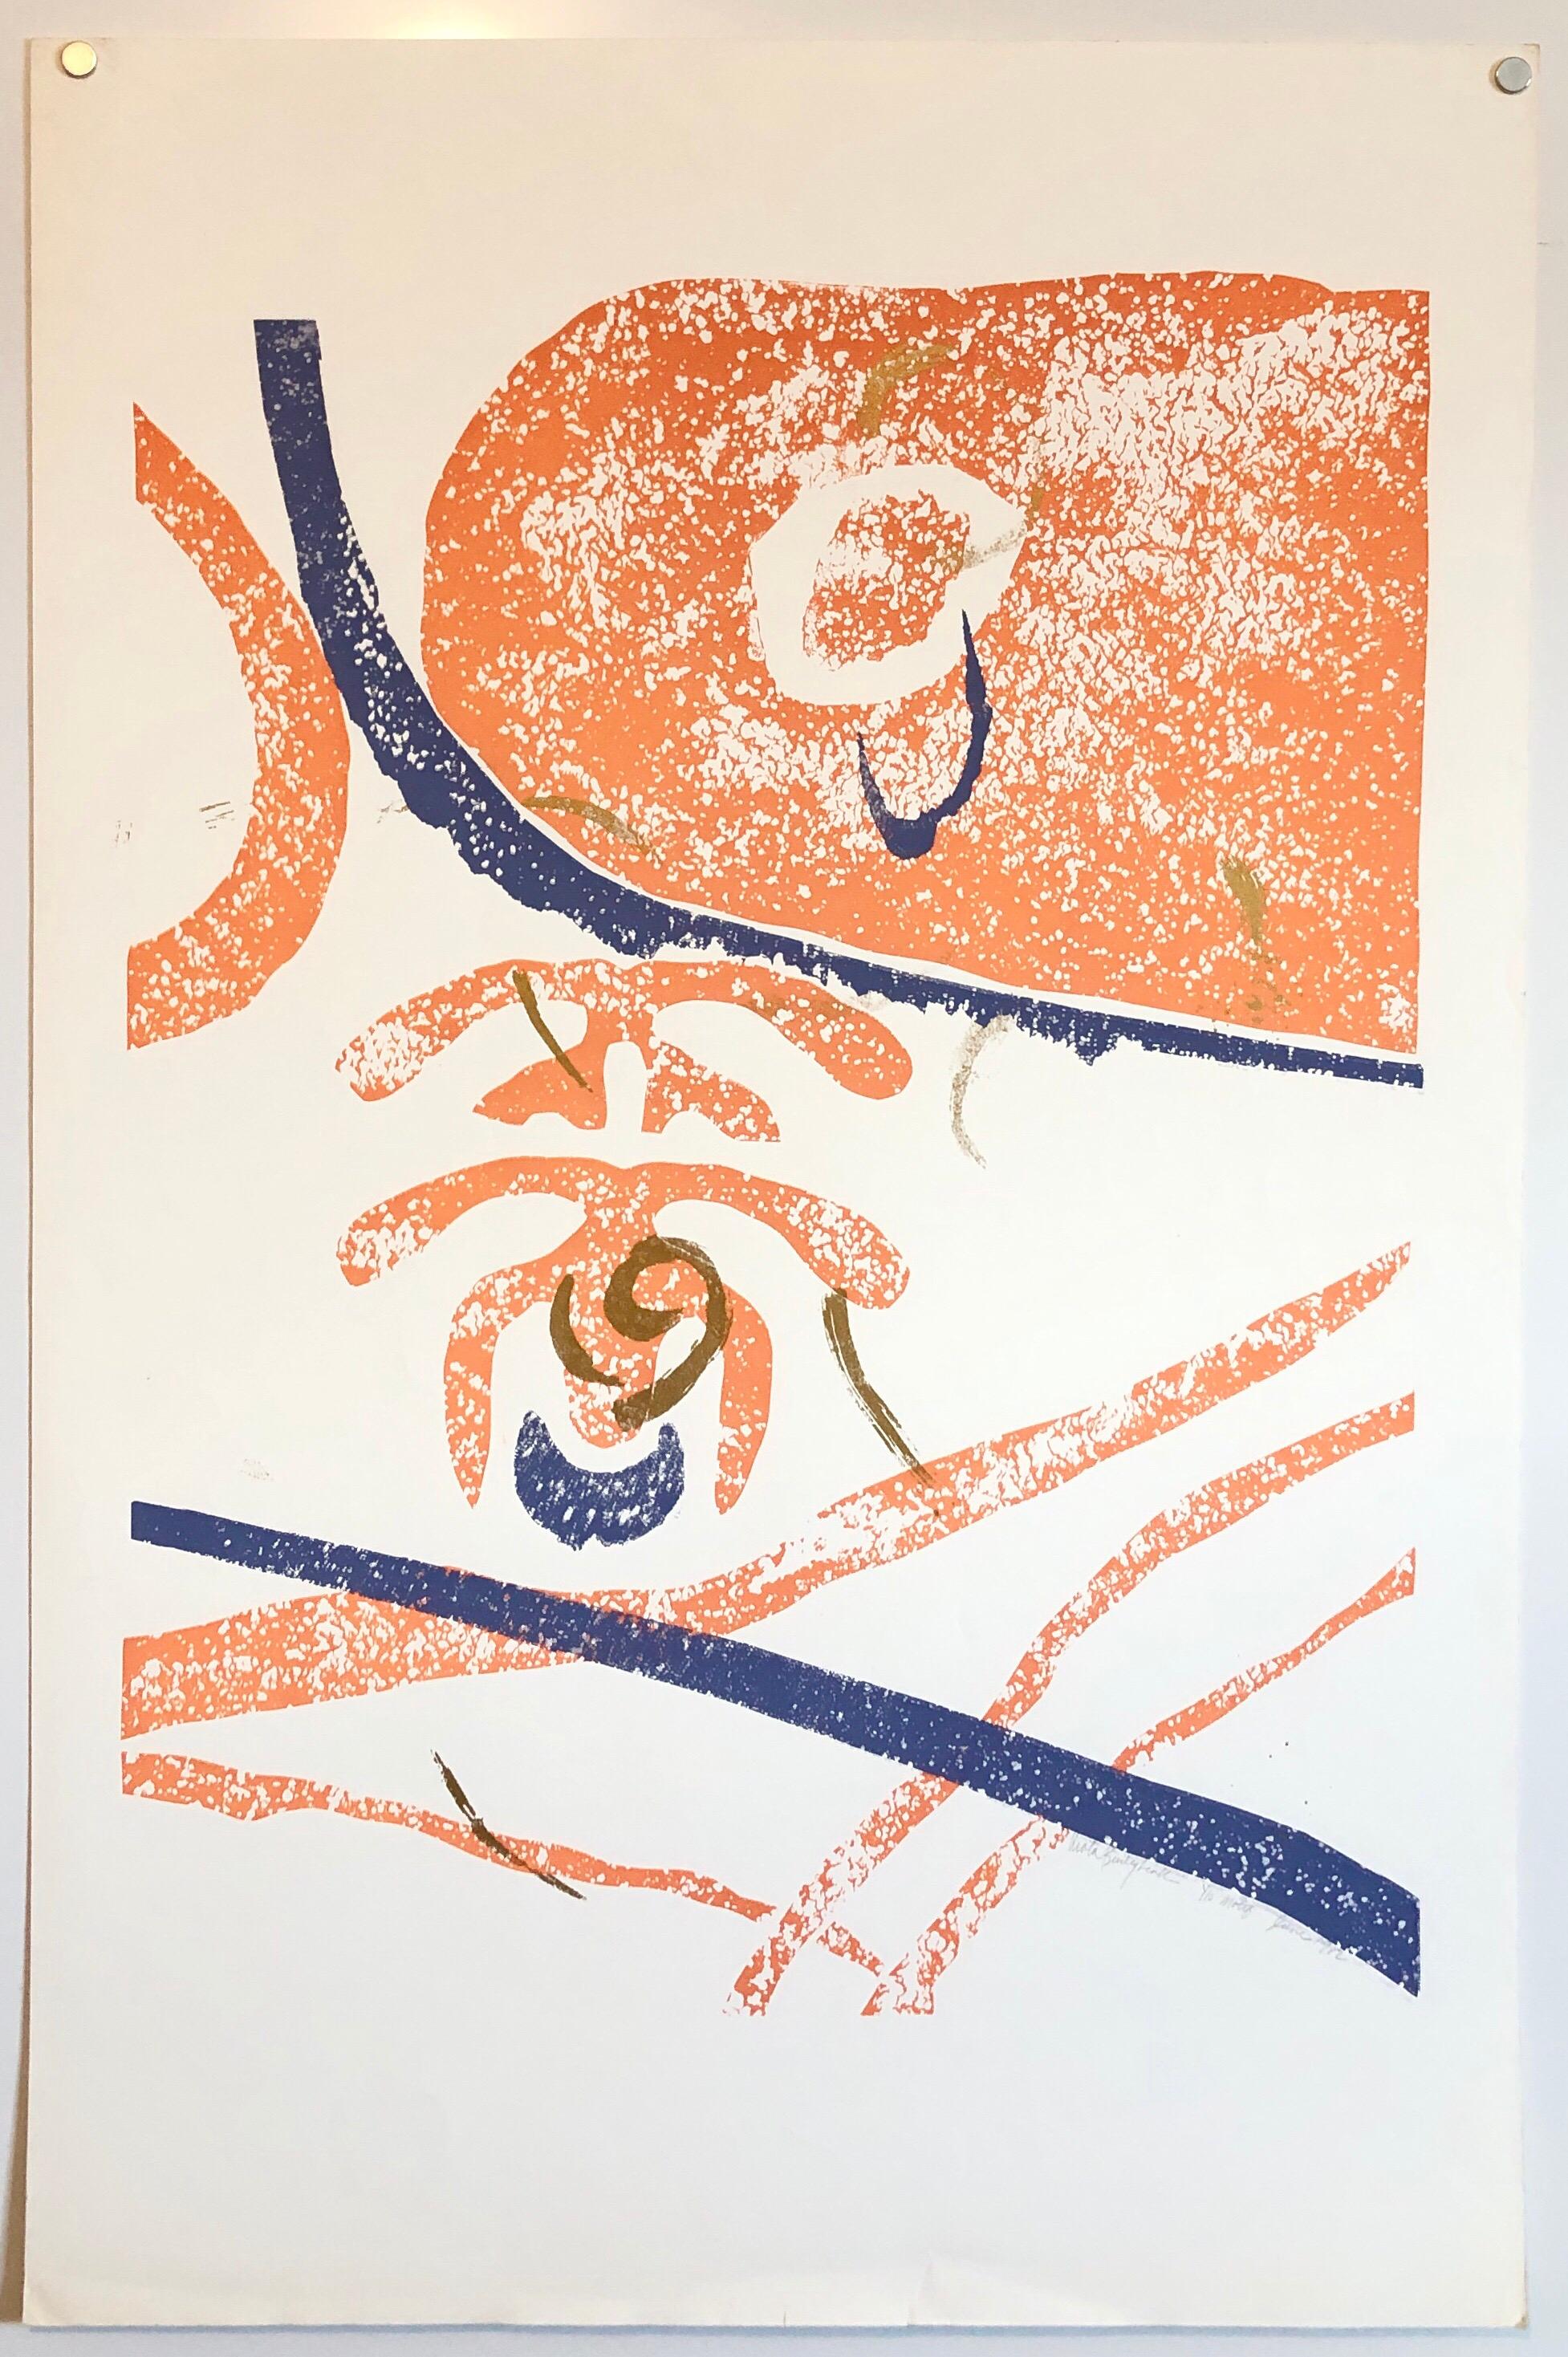 Motif (abstrait) en orange, bleu et or abstrait.
Extrait de la petite édition de 10 exemplaires de 1982. Je ne sais pas s'il s'agit d'une gravure sur bois ou d'une sérigraphie ou d'une combinaison des deux. 

Viola Burley Leak, Américaine (1944 -